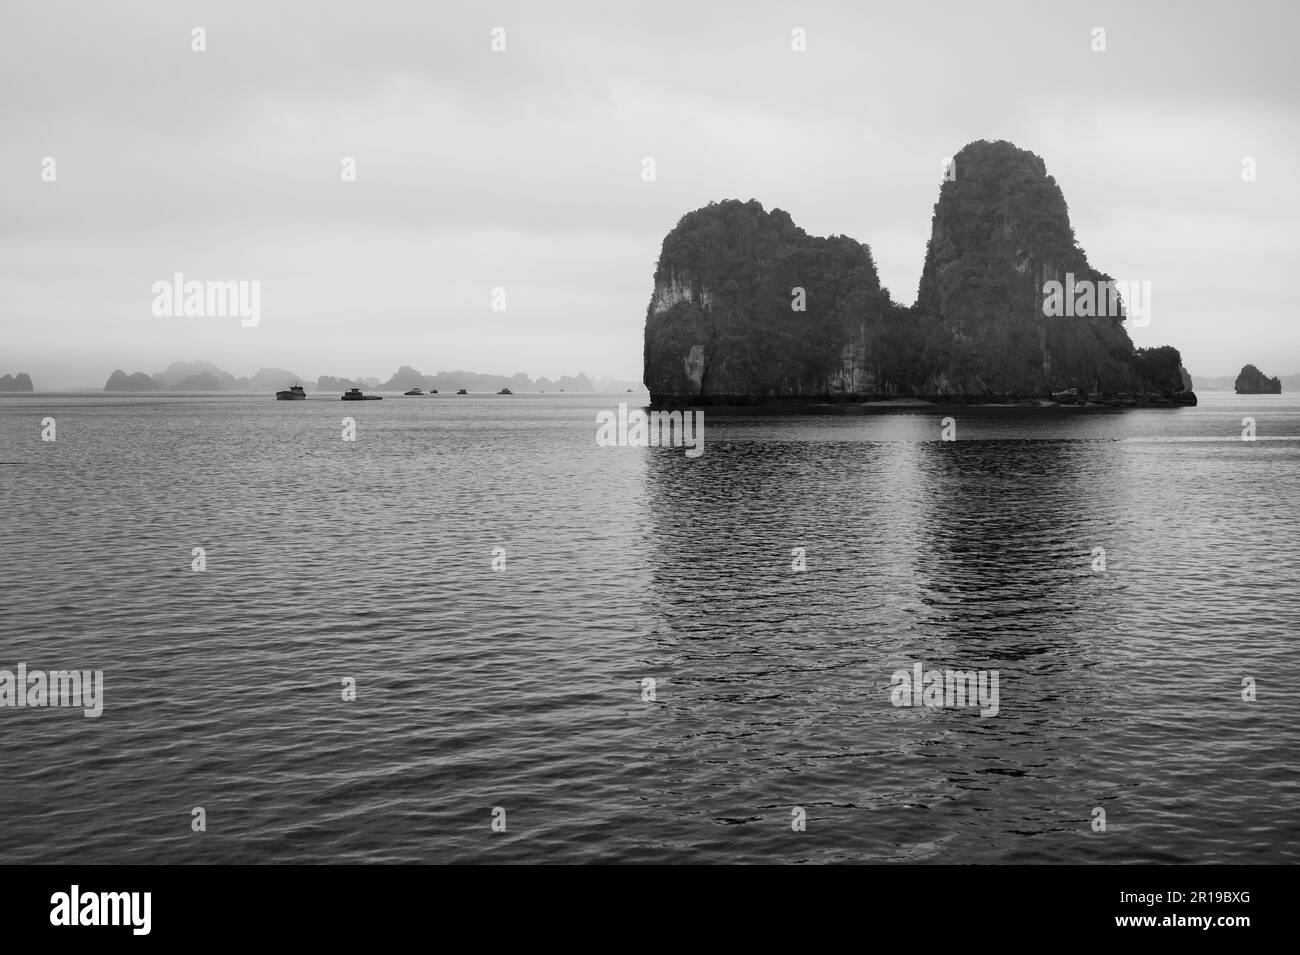 Barges naviguant parmi les îles et îlots calcaires caractéristiques de Bai Tu long Bay, Halong Bay, Vietnam. Banque D'Images